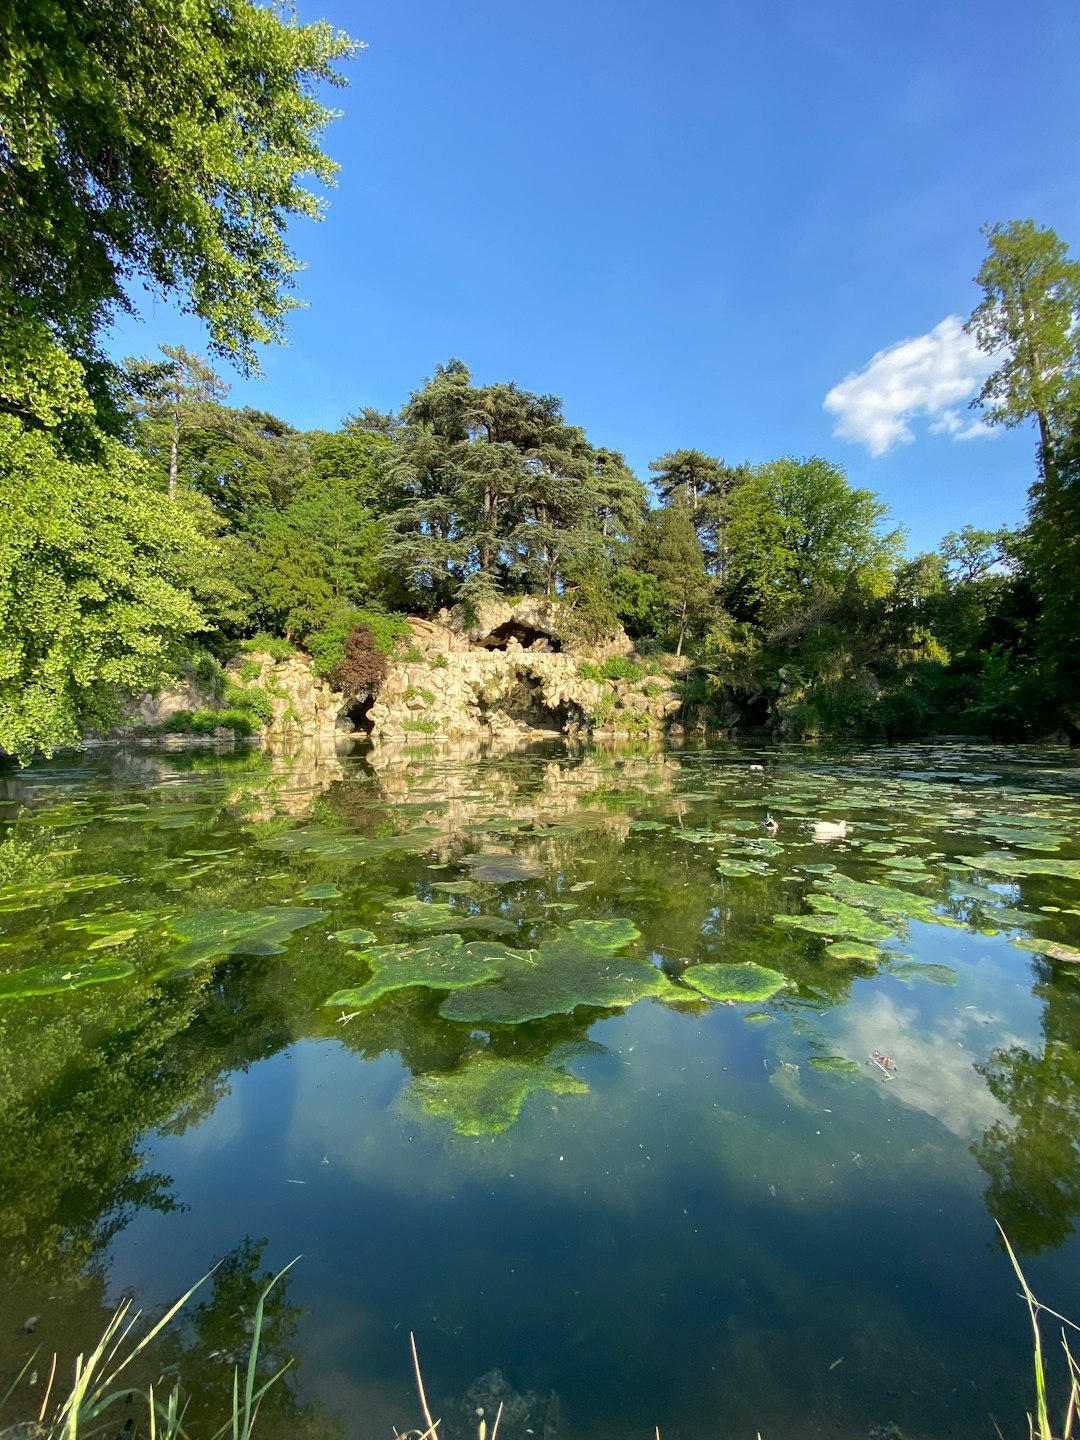 Nature reserve photo spot Bois de Boulogne France